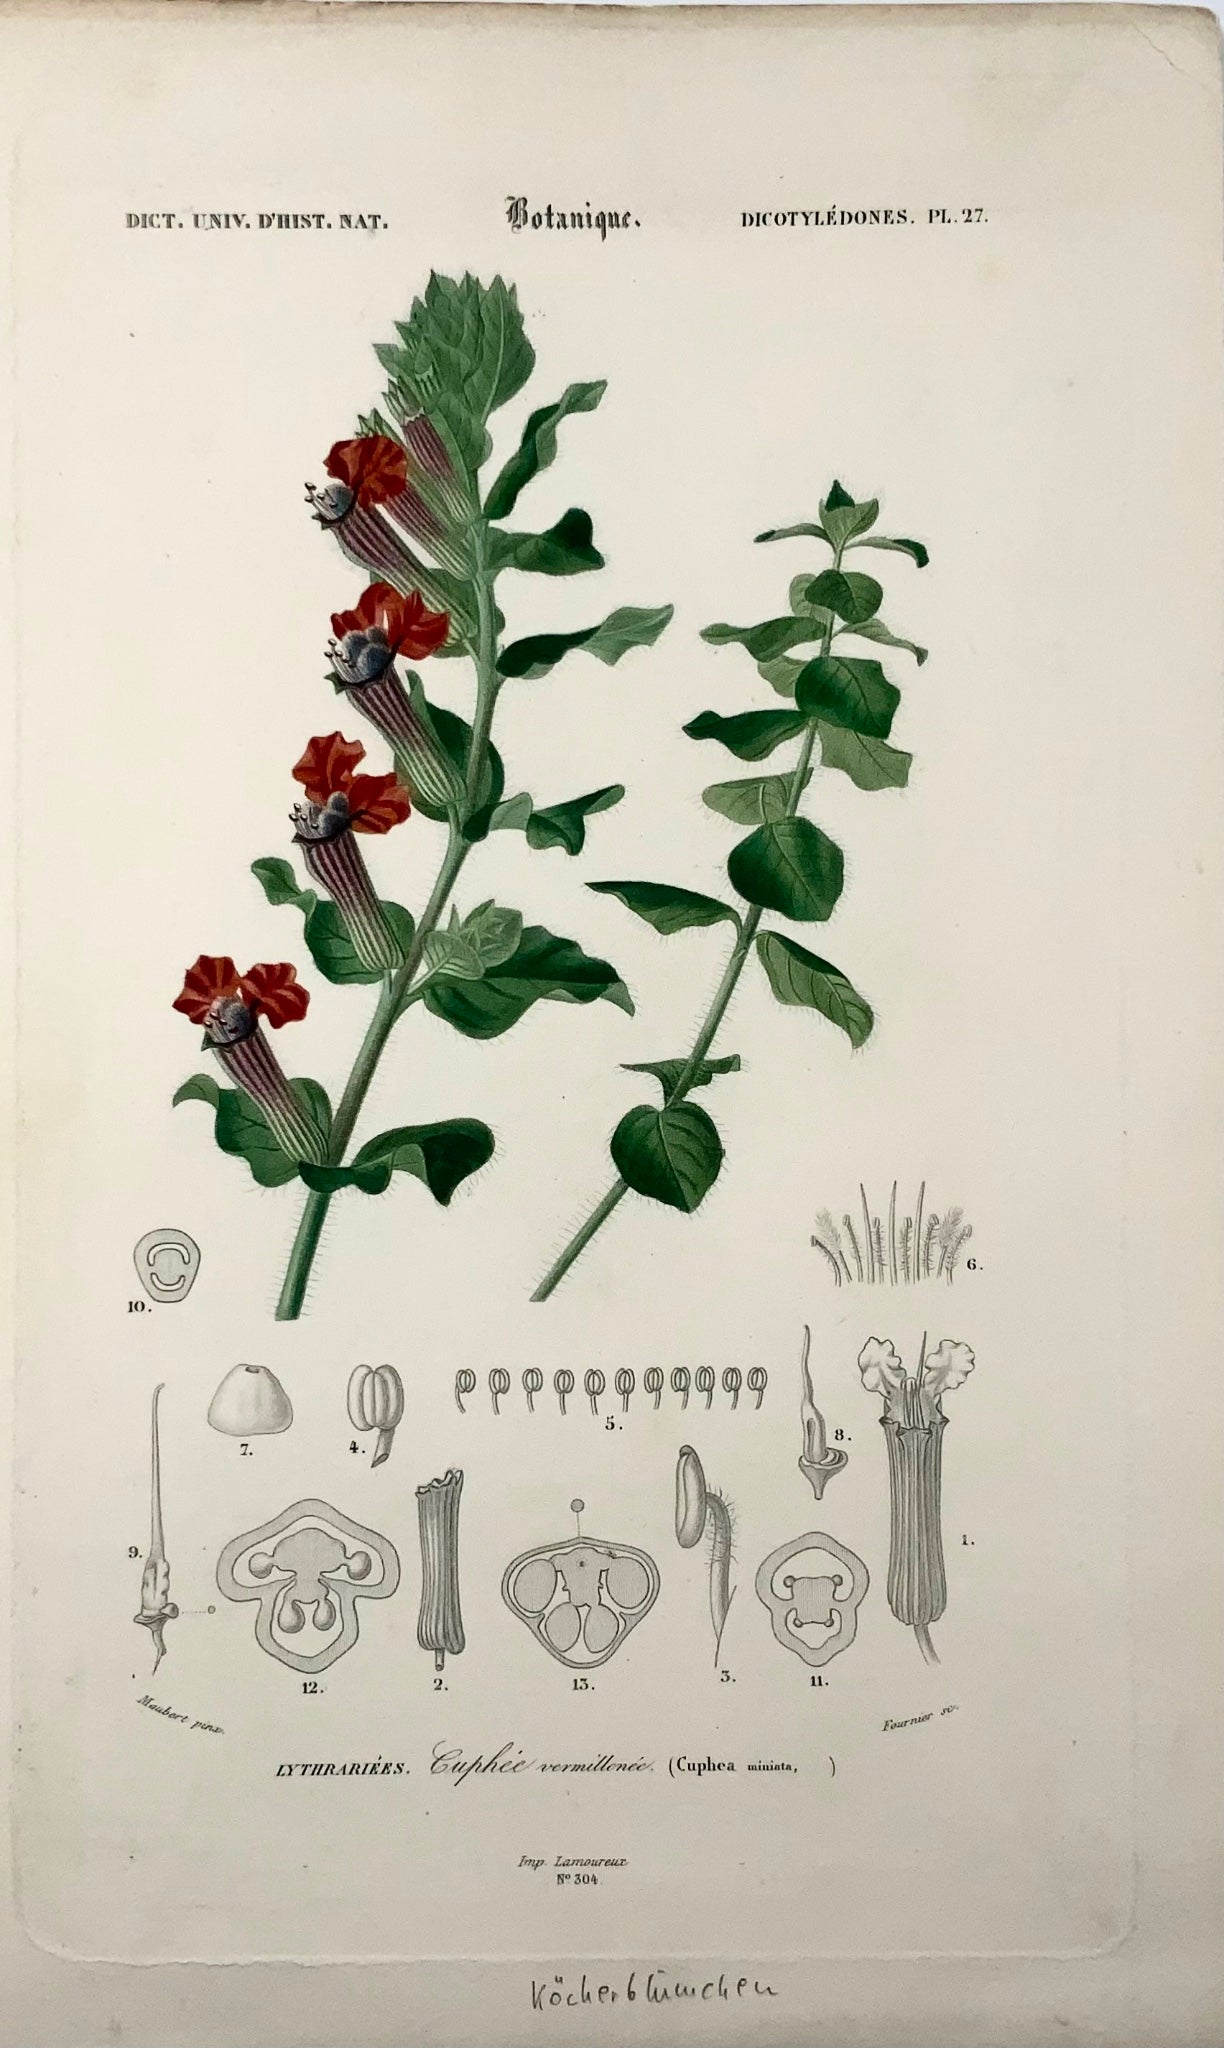 1849 Lythraceae, cupheas, botanica, ed. Maubert, colore originale della mano 